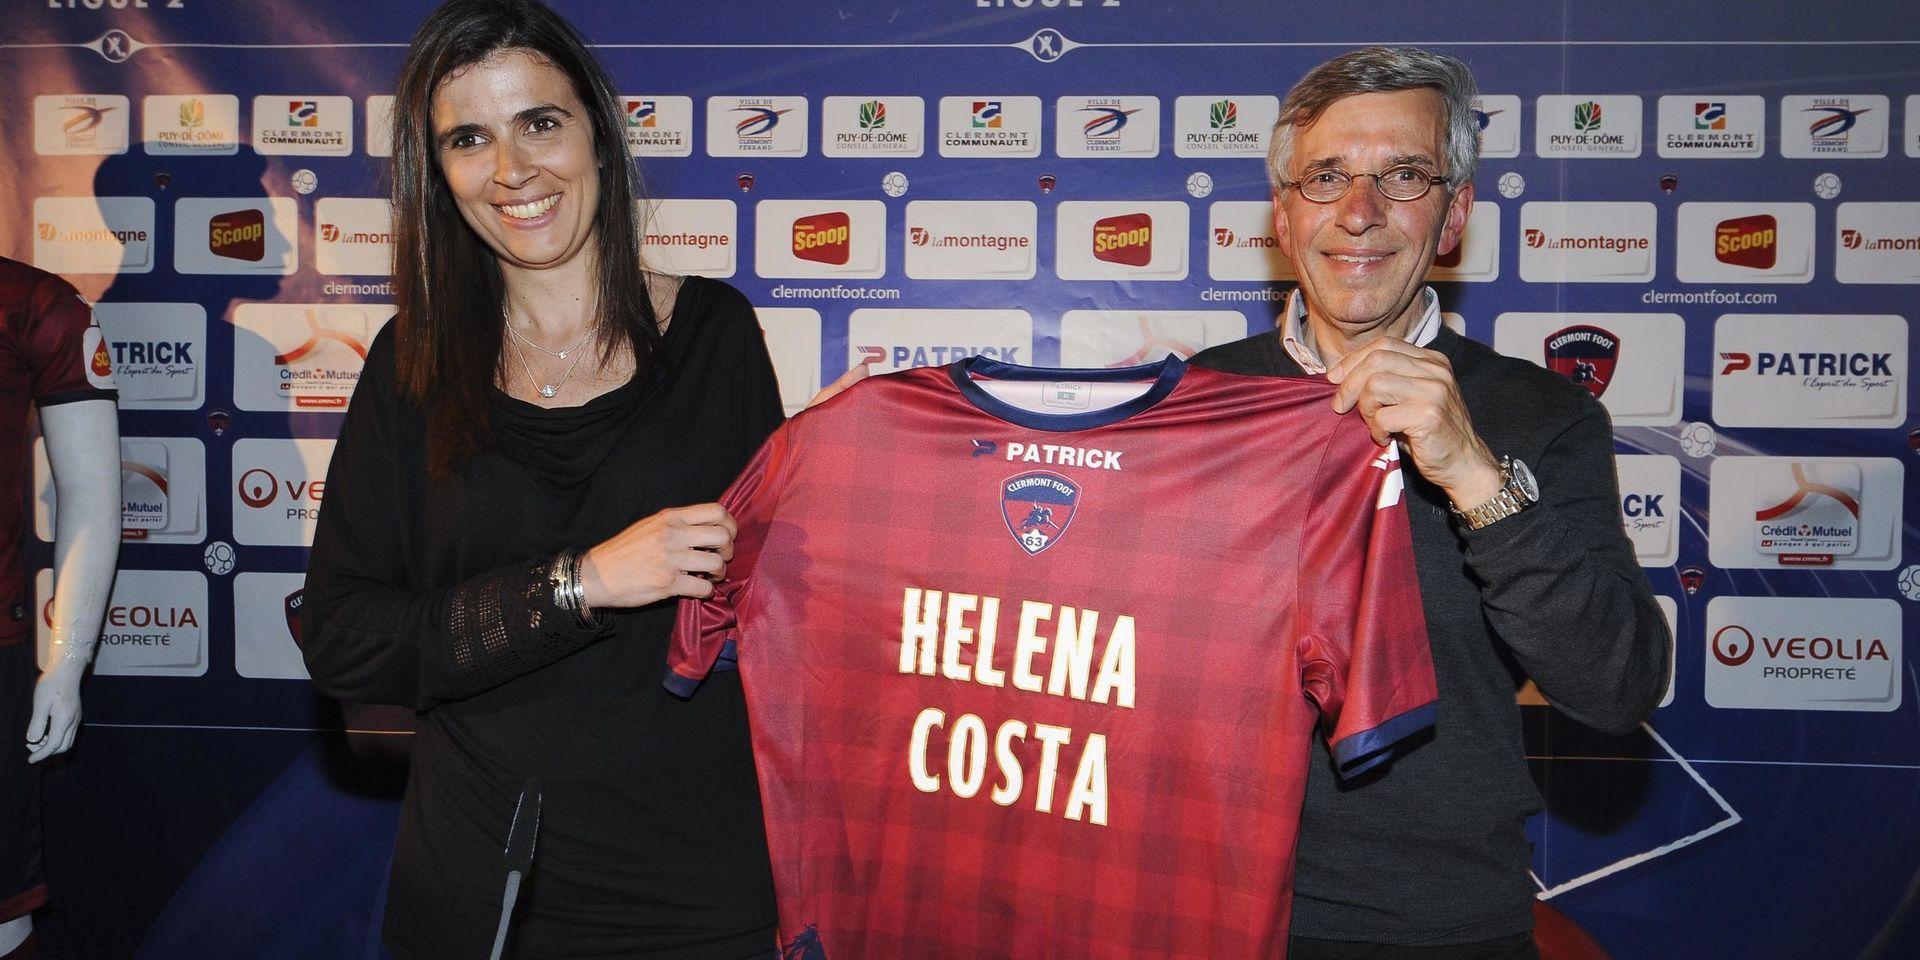 Helena Costa uppmärksammades världen över när hon 2014 tog över som ny tränare i franska proffsklubben Clermont Foot. Dessförinnan hade hon varit förbundskapten för Qatars damlandslag under två säsonger, mellan 2010 och 2012. 